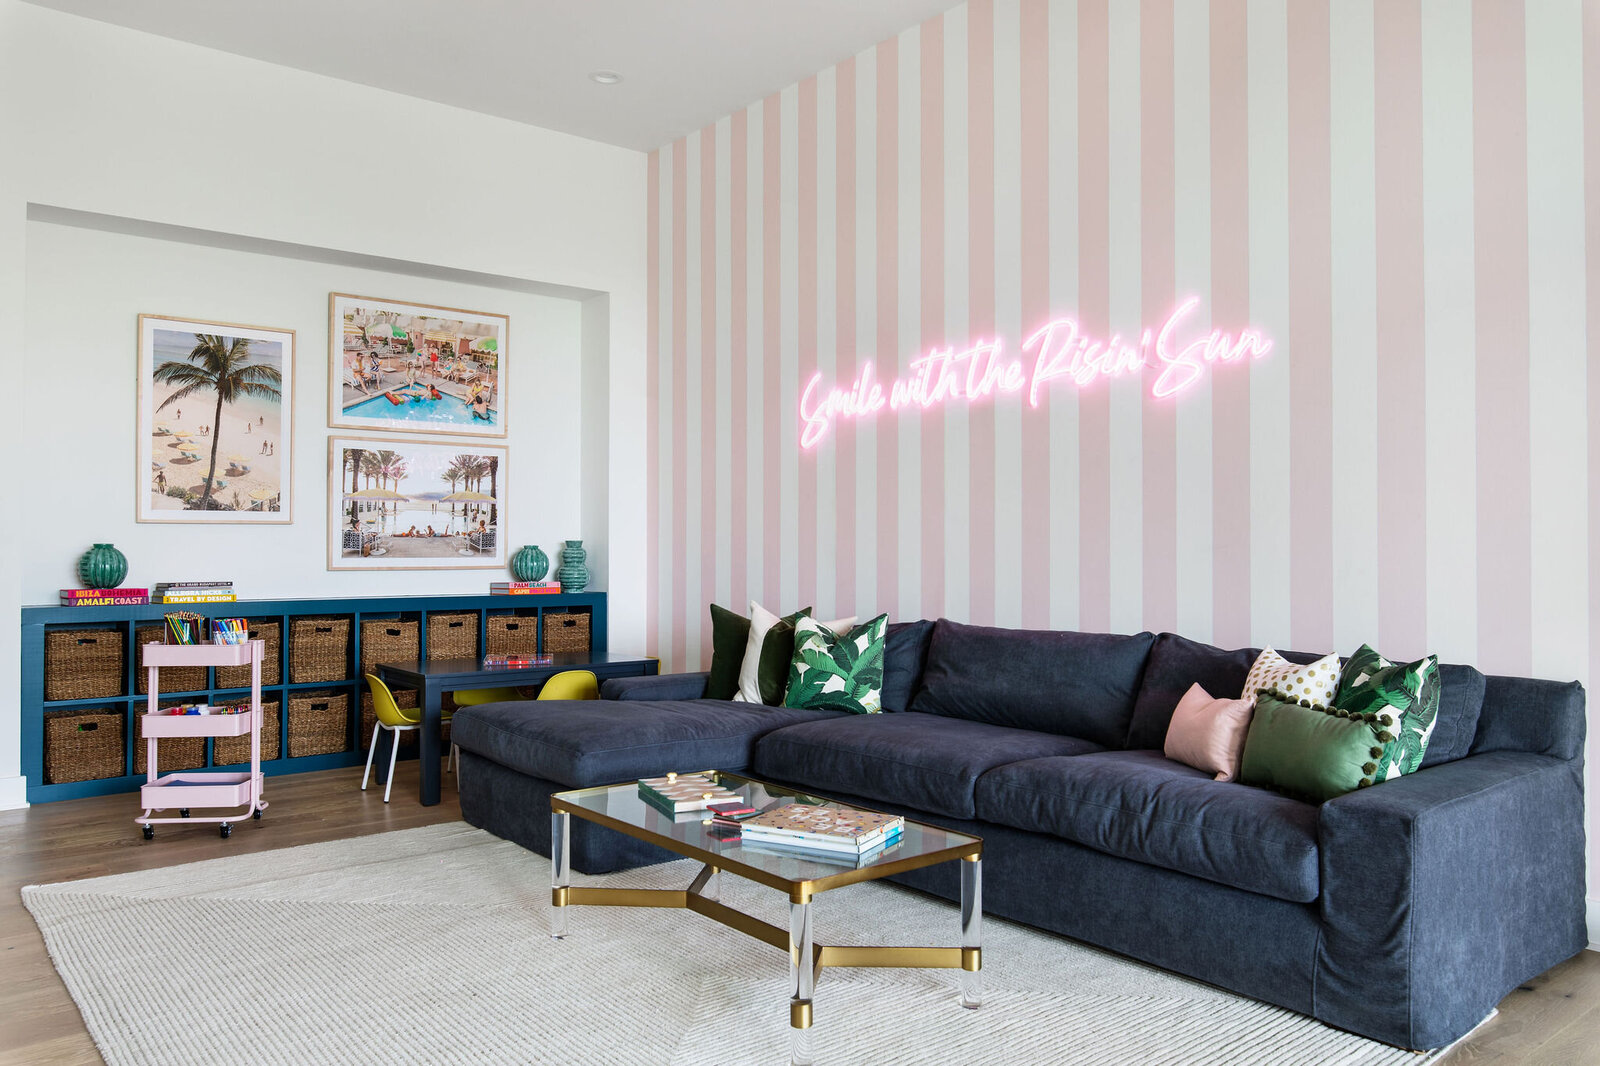 play+room+pink+stripe+walls+neon+sign+nuela+designs